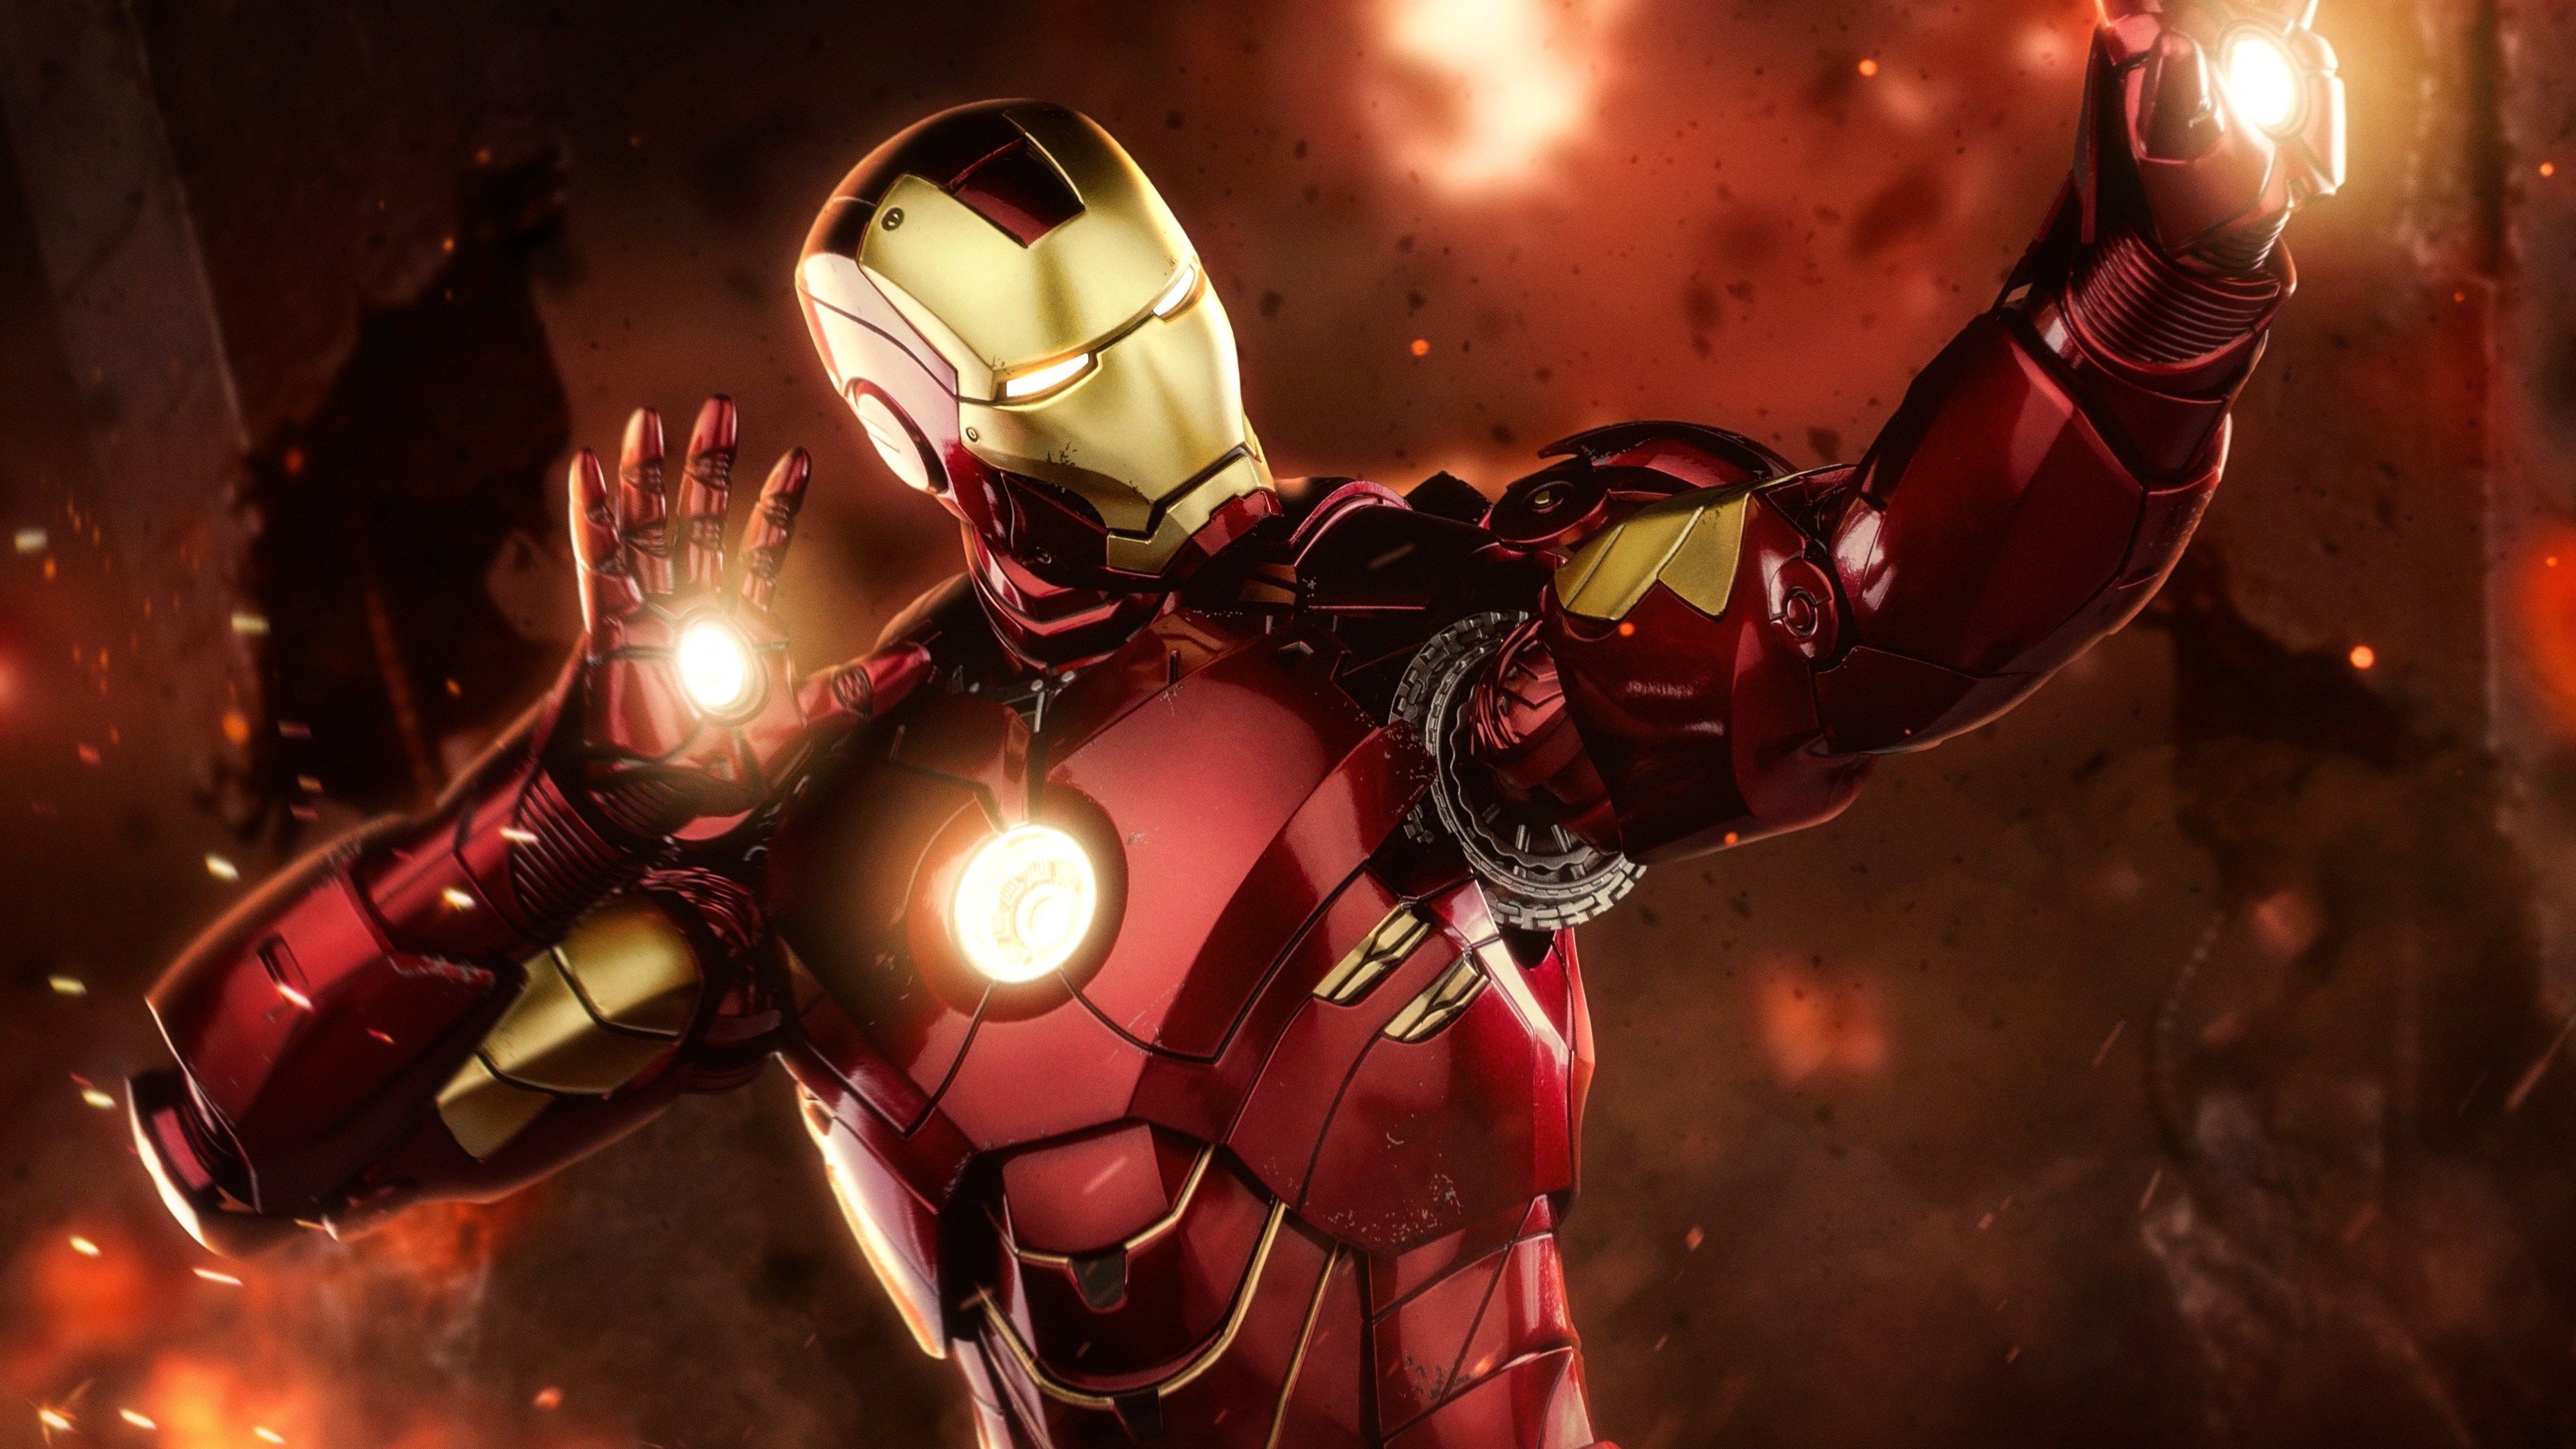 Full HD Best Iron Man Wallpaper 4K of Wallpaper for Andriod